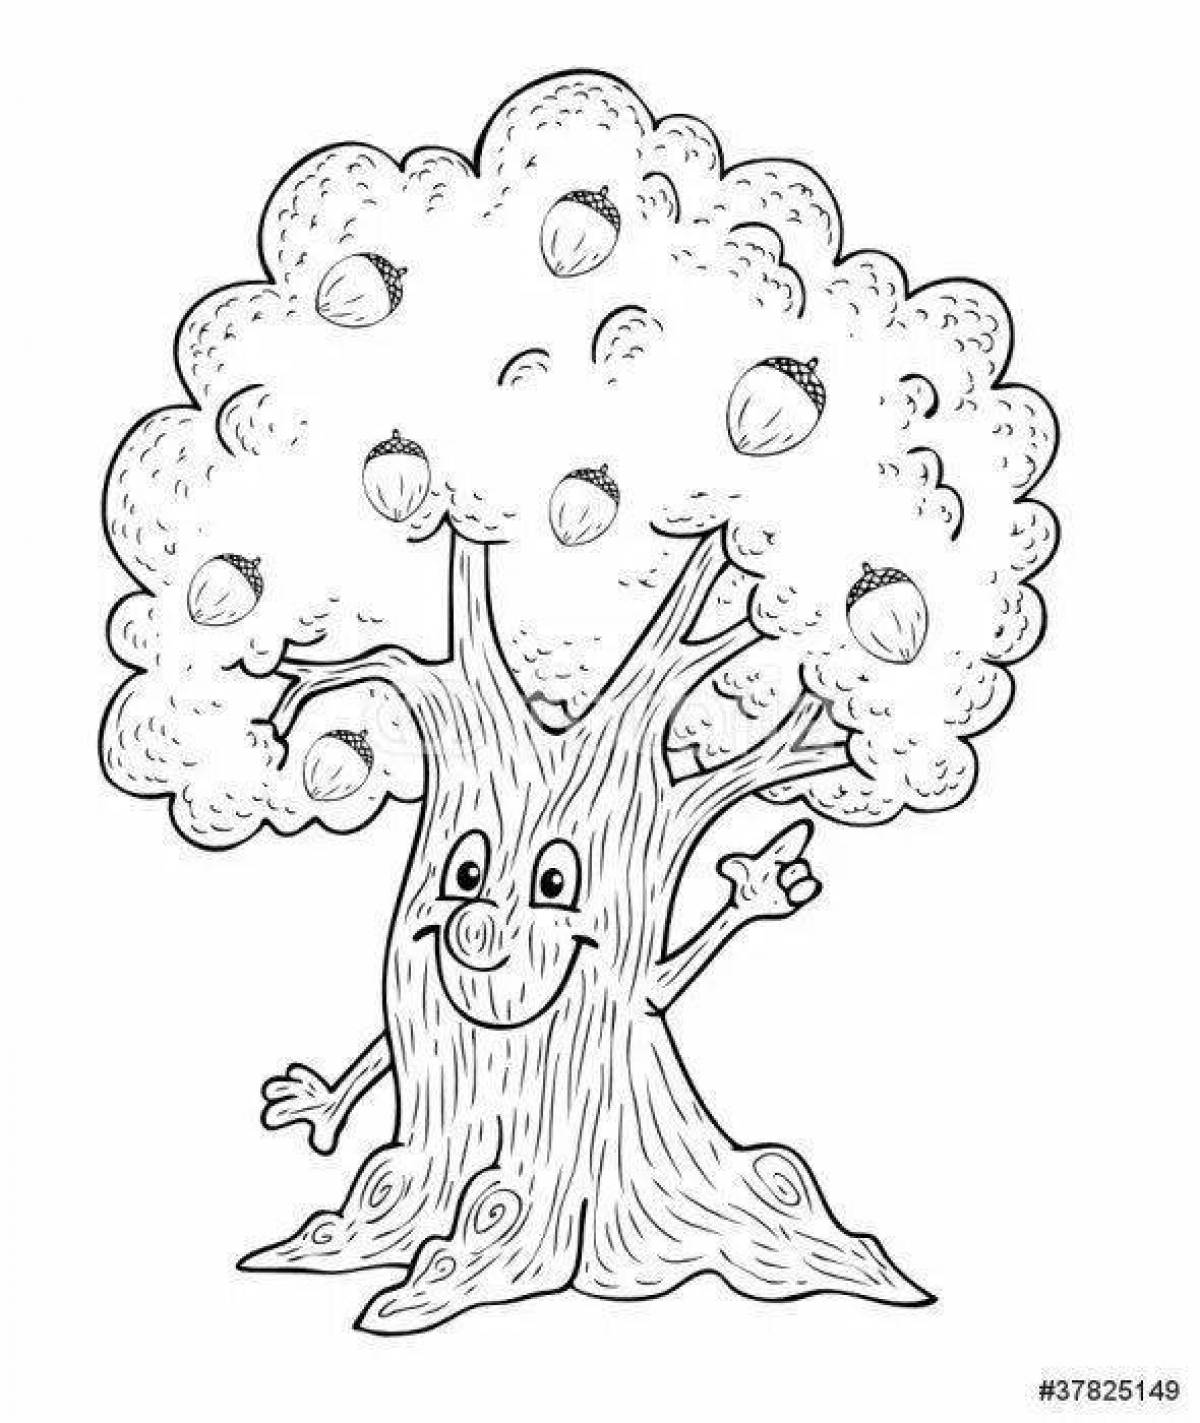 Fantastic oak tree coloring book for kids